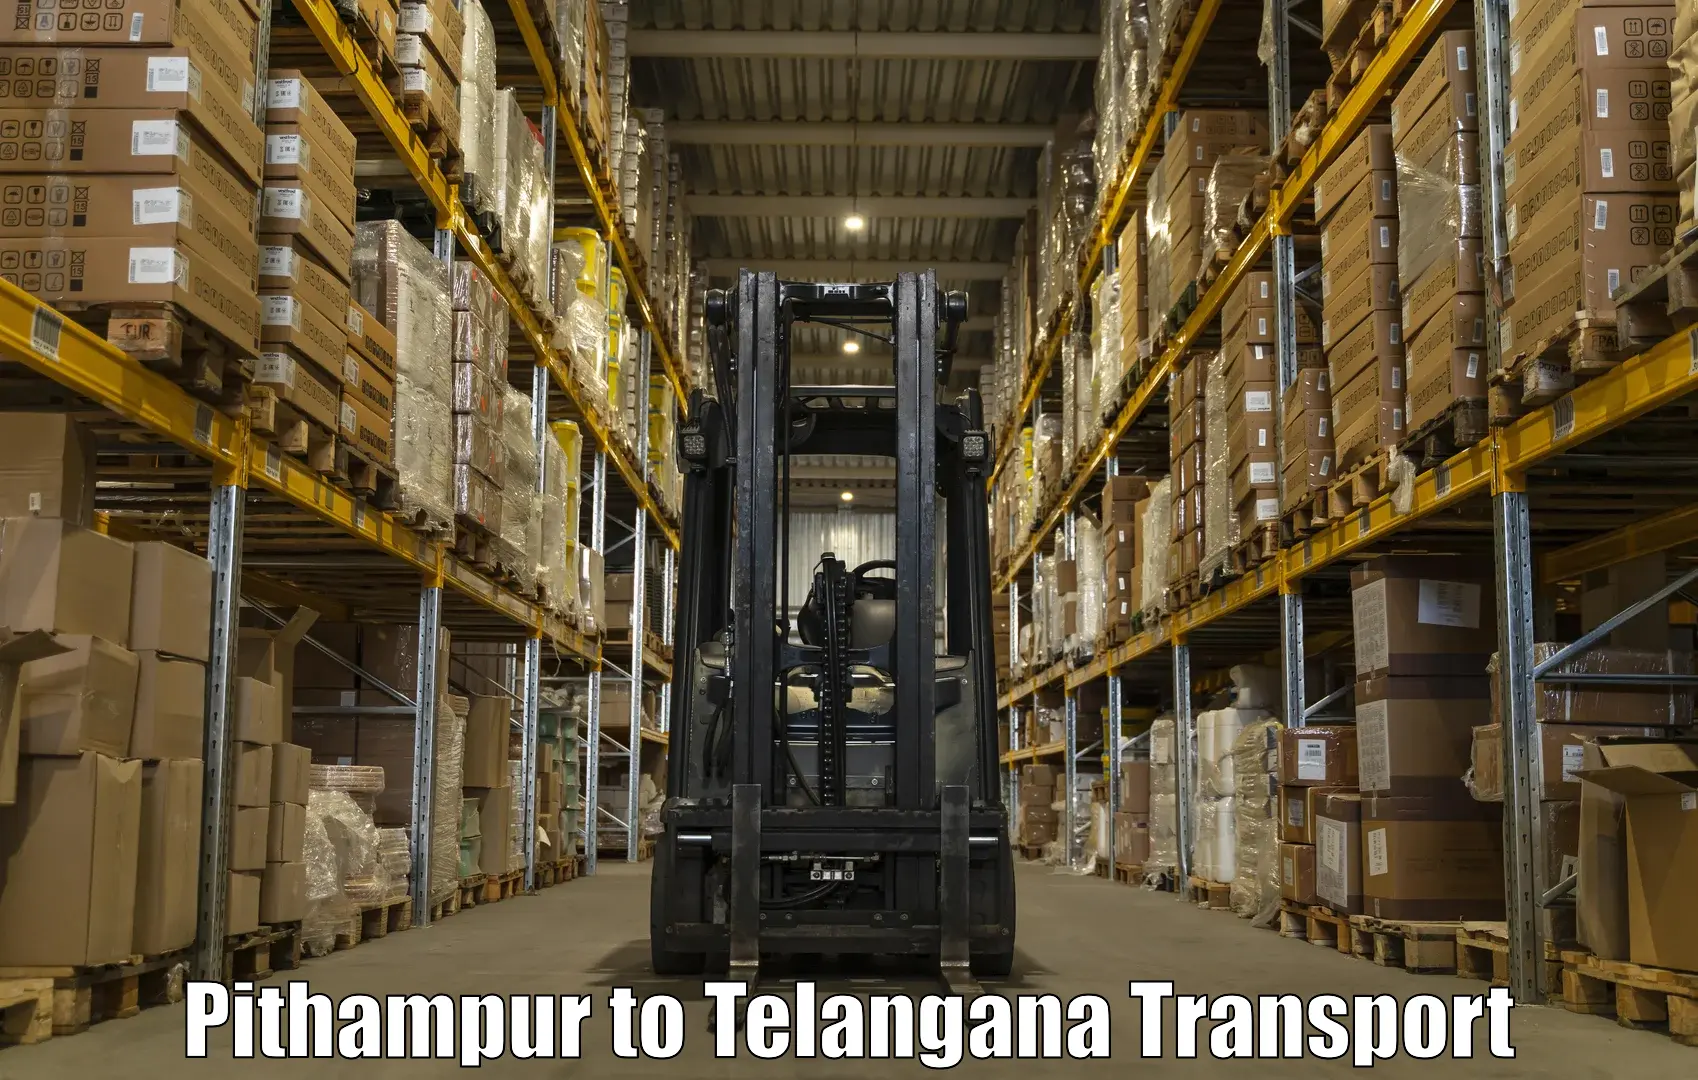 Online transport booking Pithampur to Gangadhara